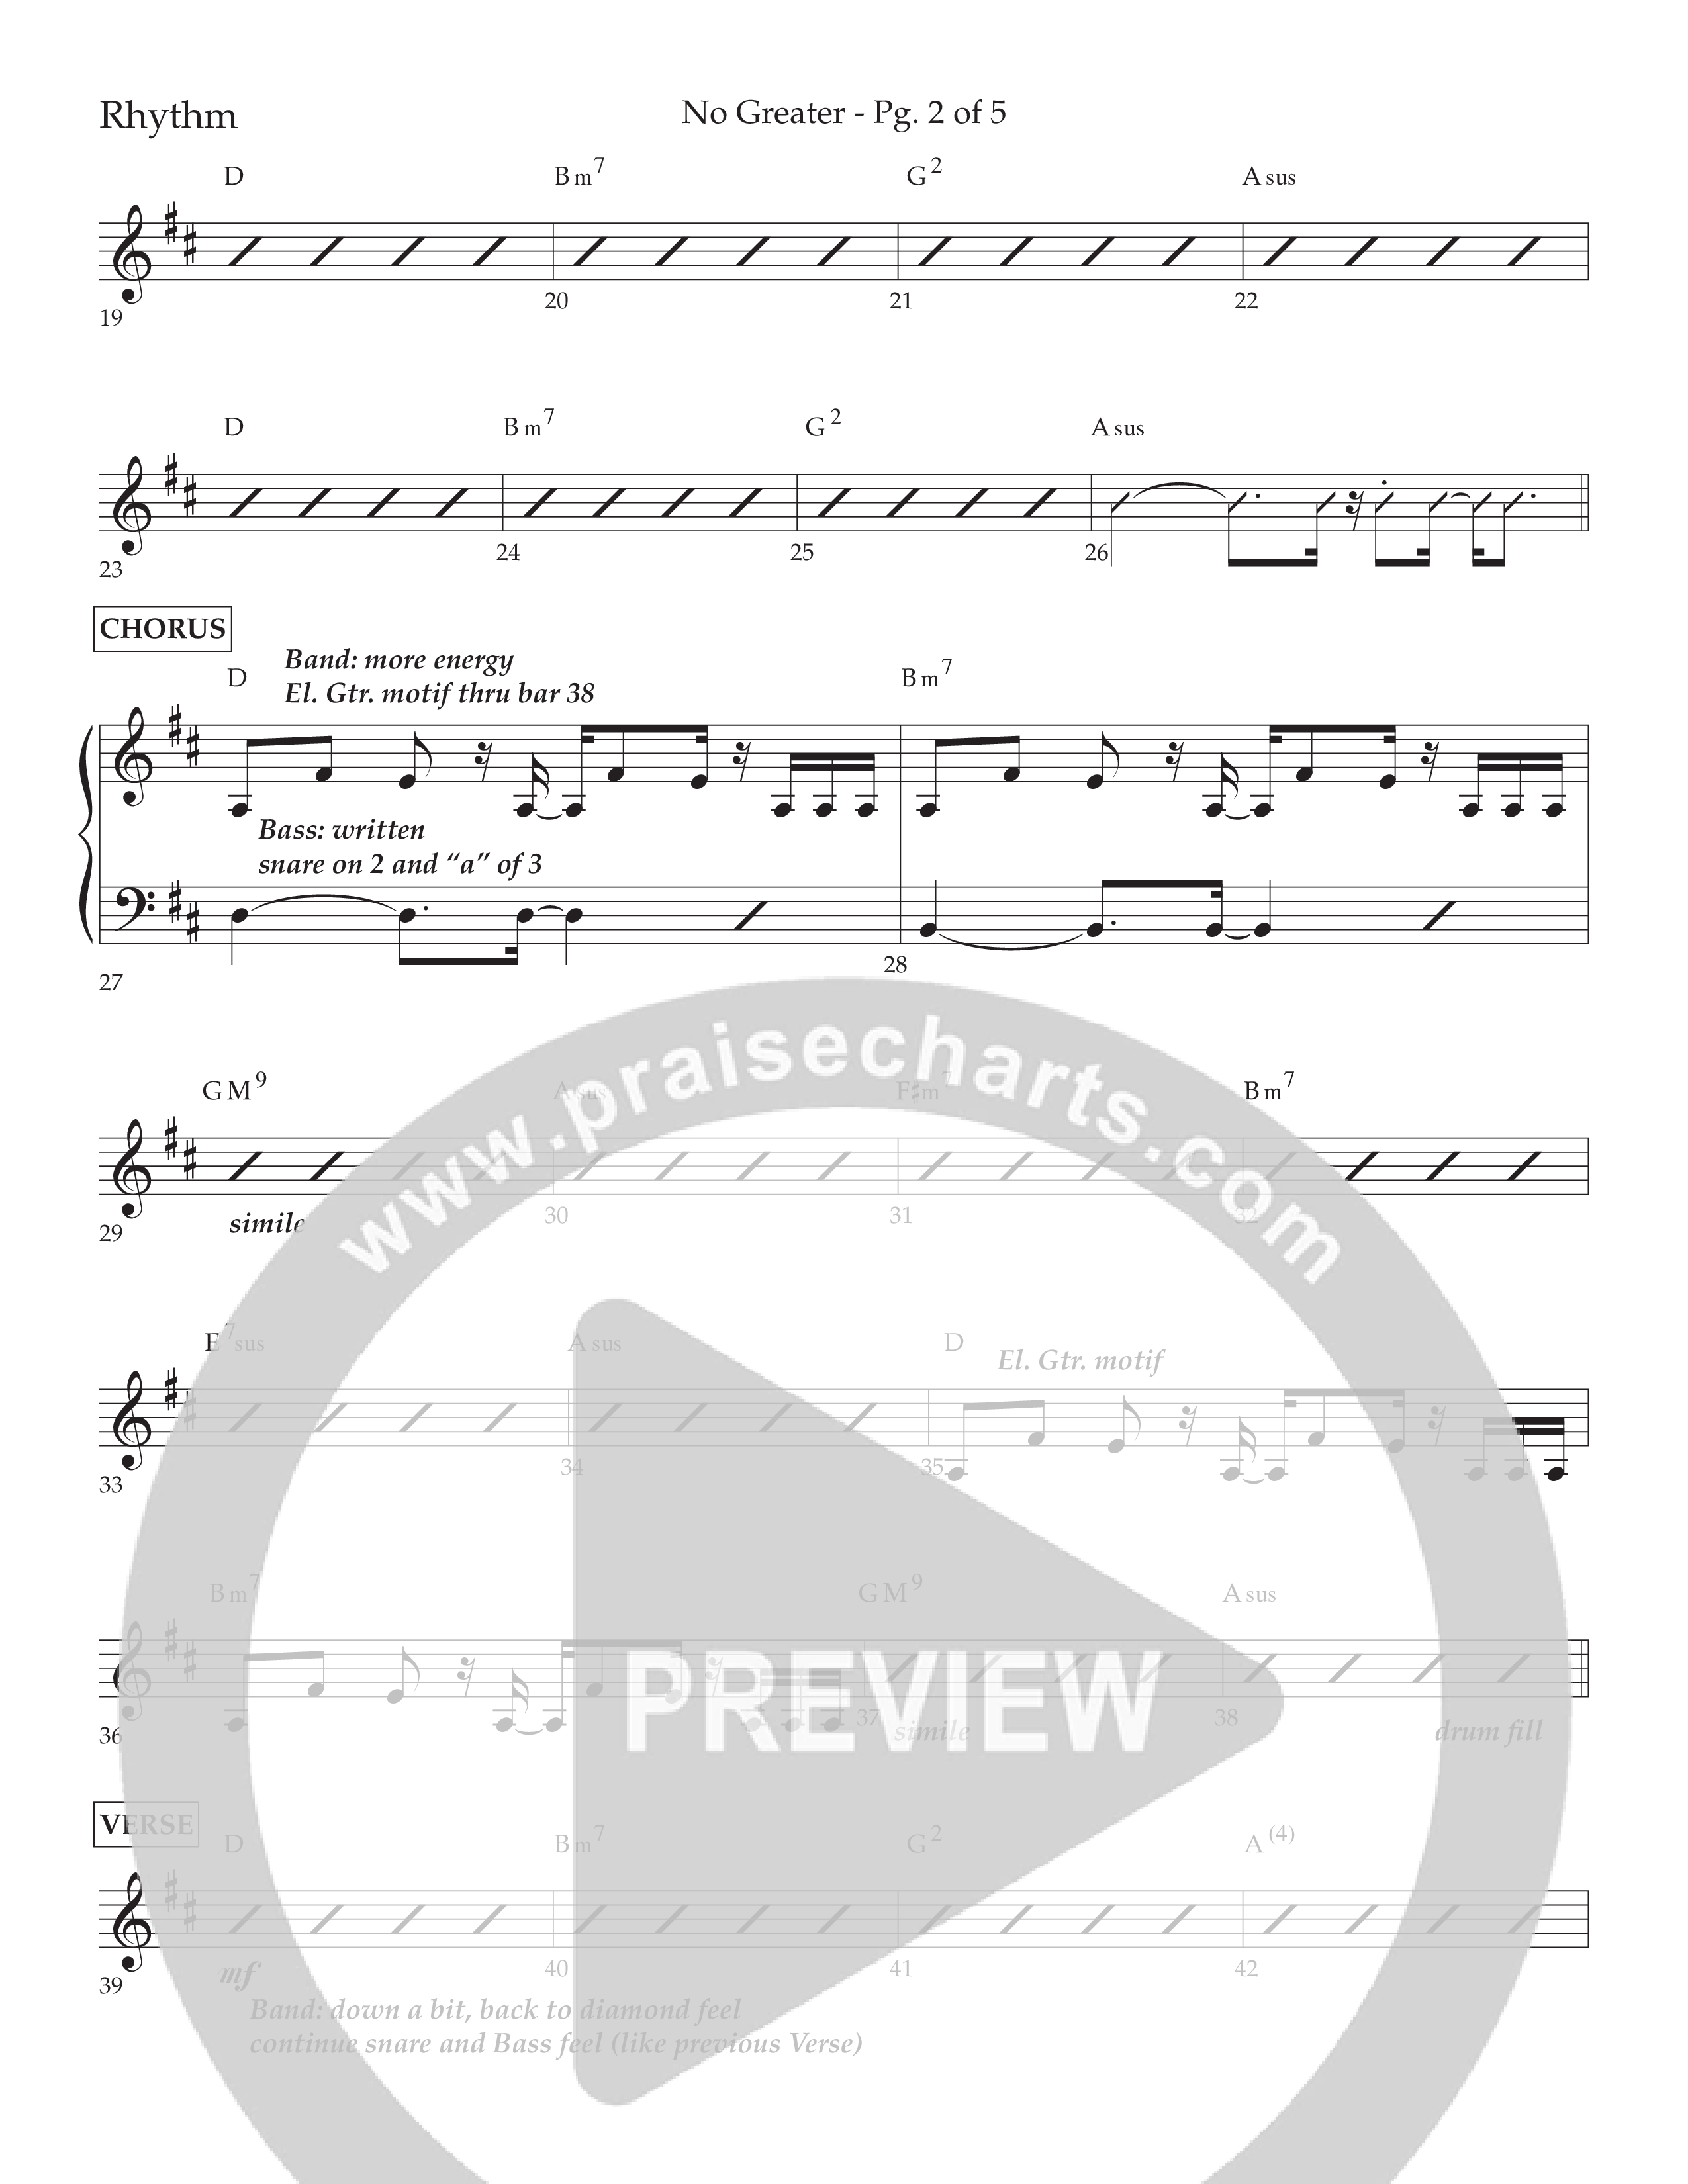 No Greater (Choral Anthem SATB) Lead Melody & Rhythm (Lifeway Choral / Arr. David Wise)